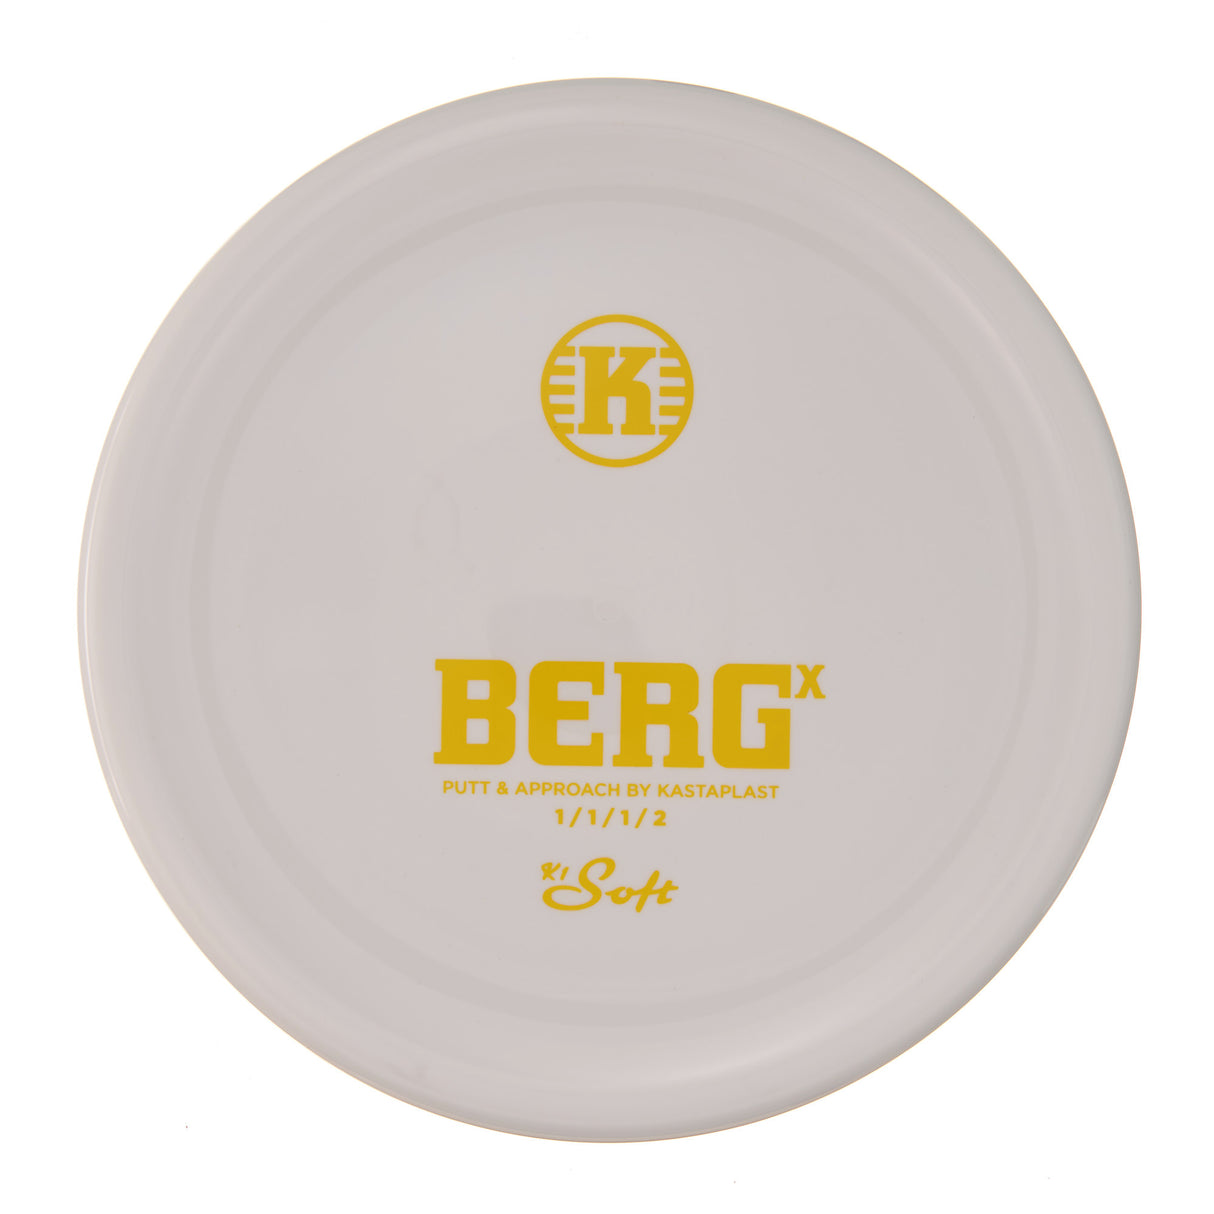 Kastaplast Berg X - K1 Soft 176g | Style 0005